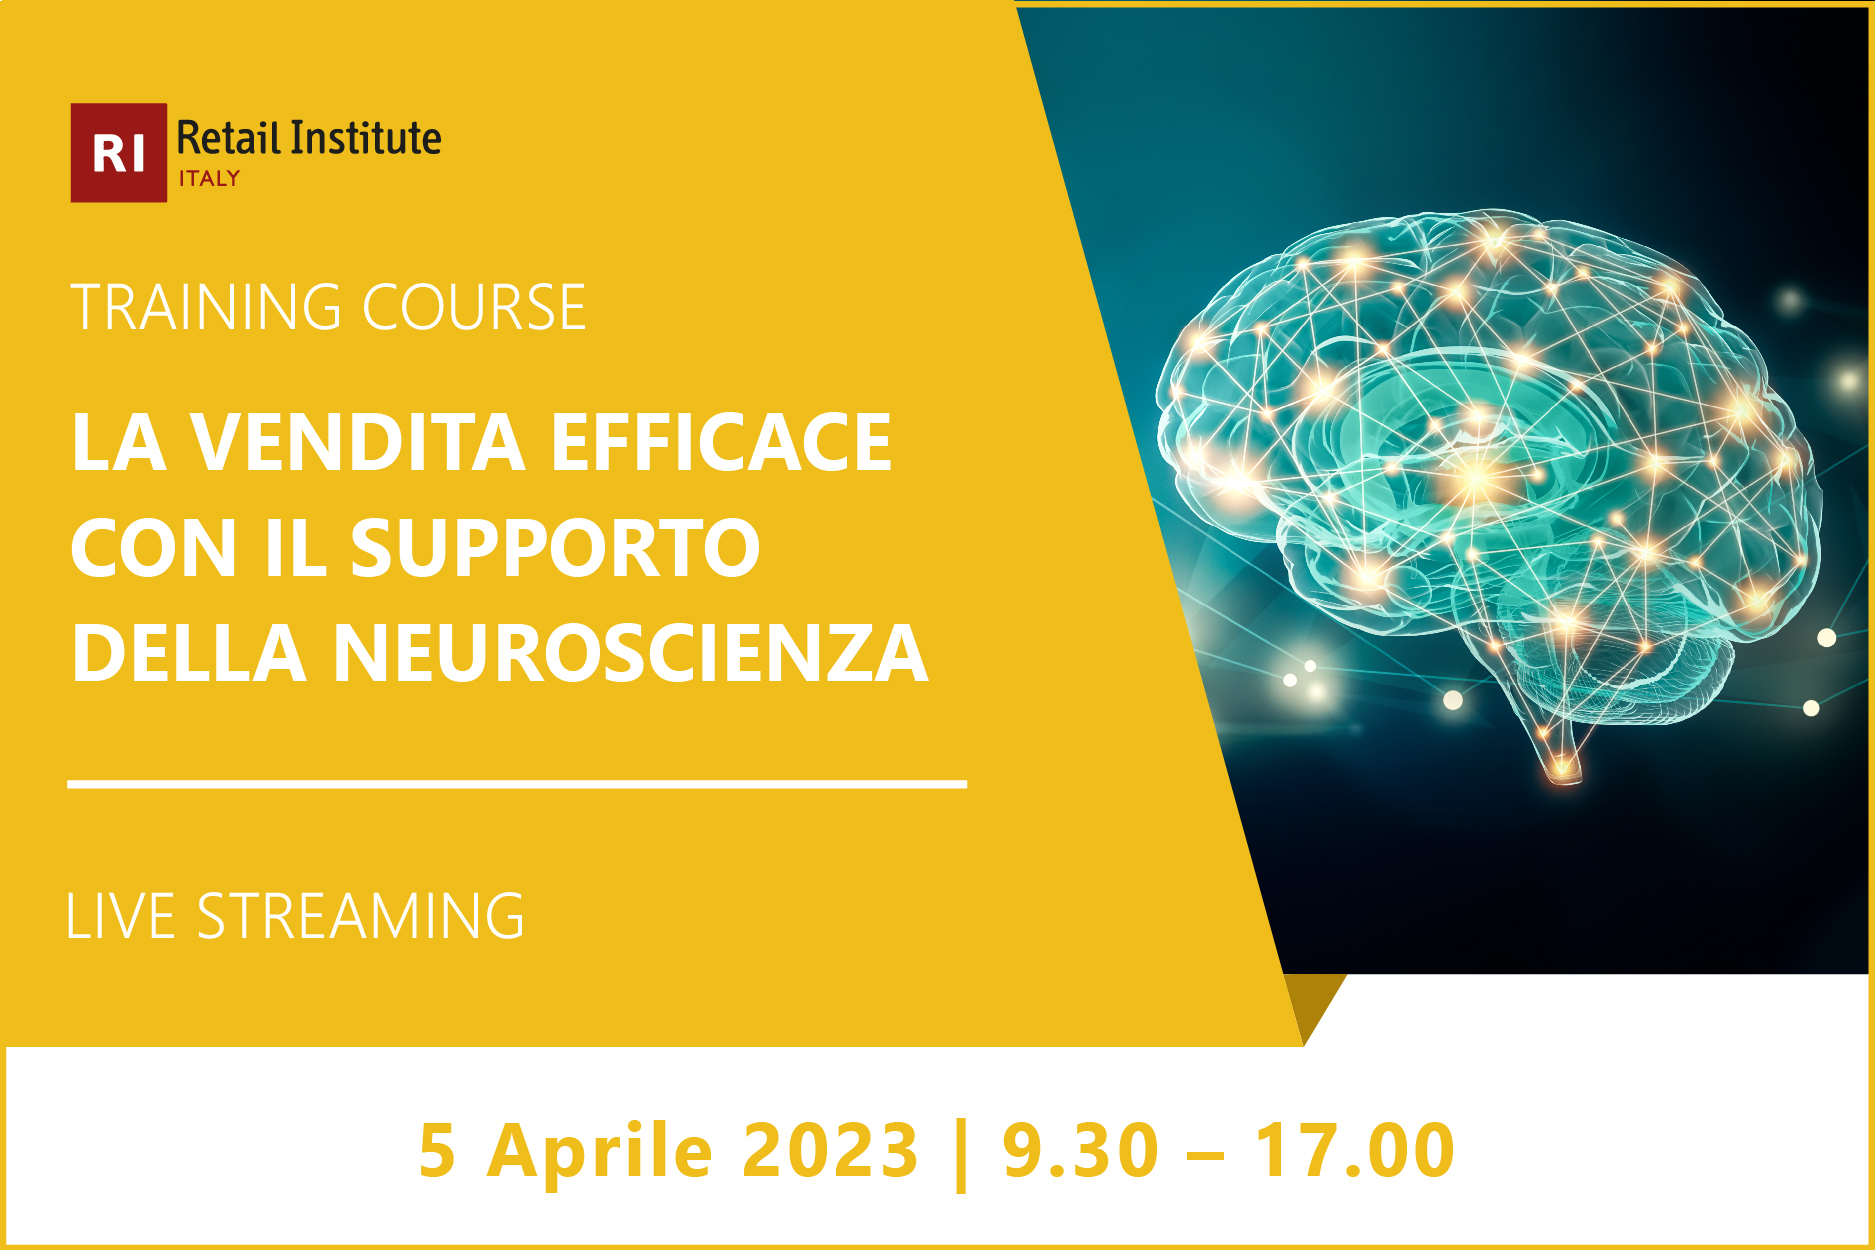 Training Course “La vendita efficace con il supporto della neuroscienza” – 5 aprile 2023